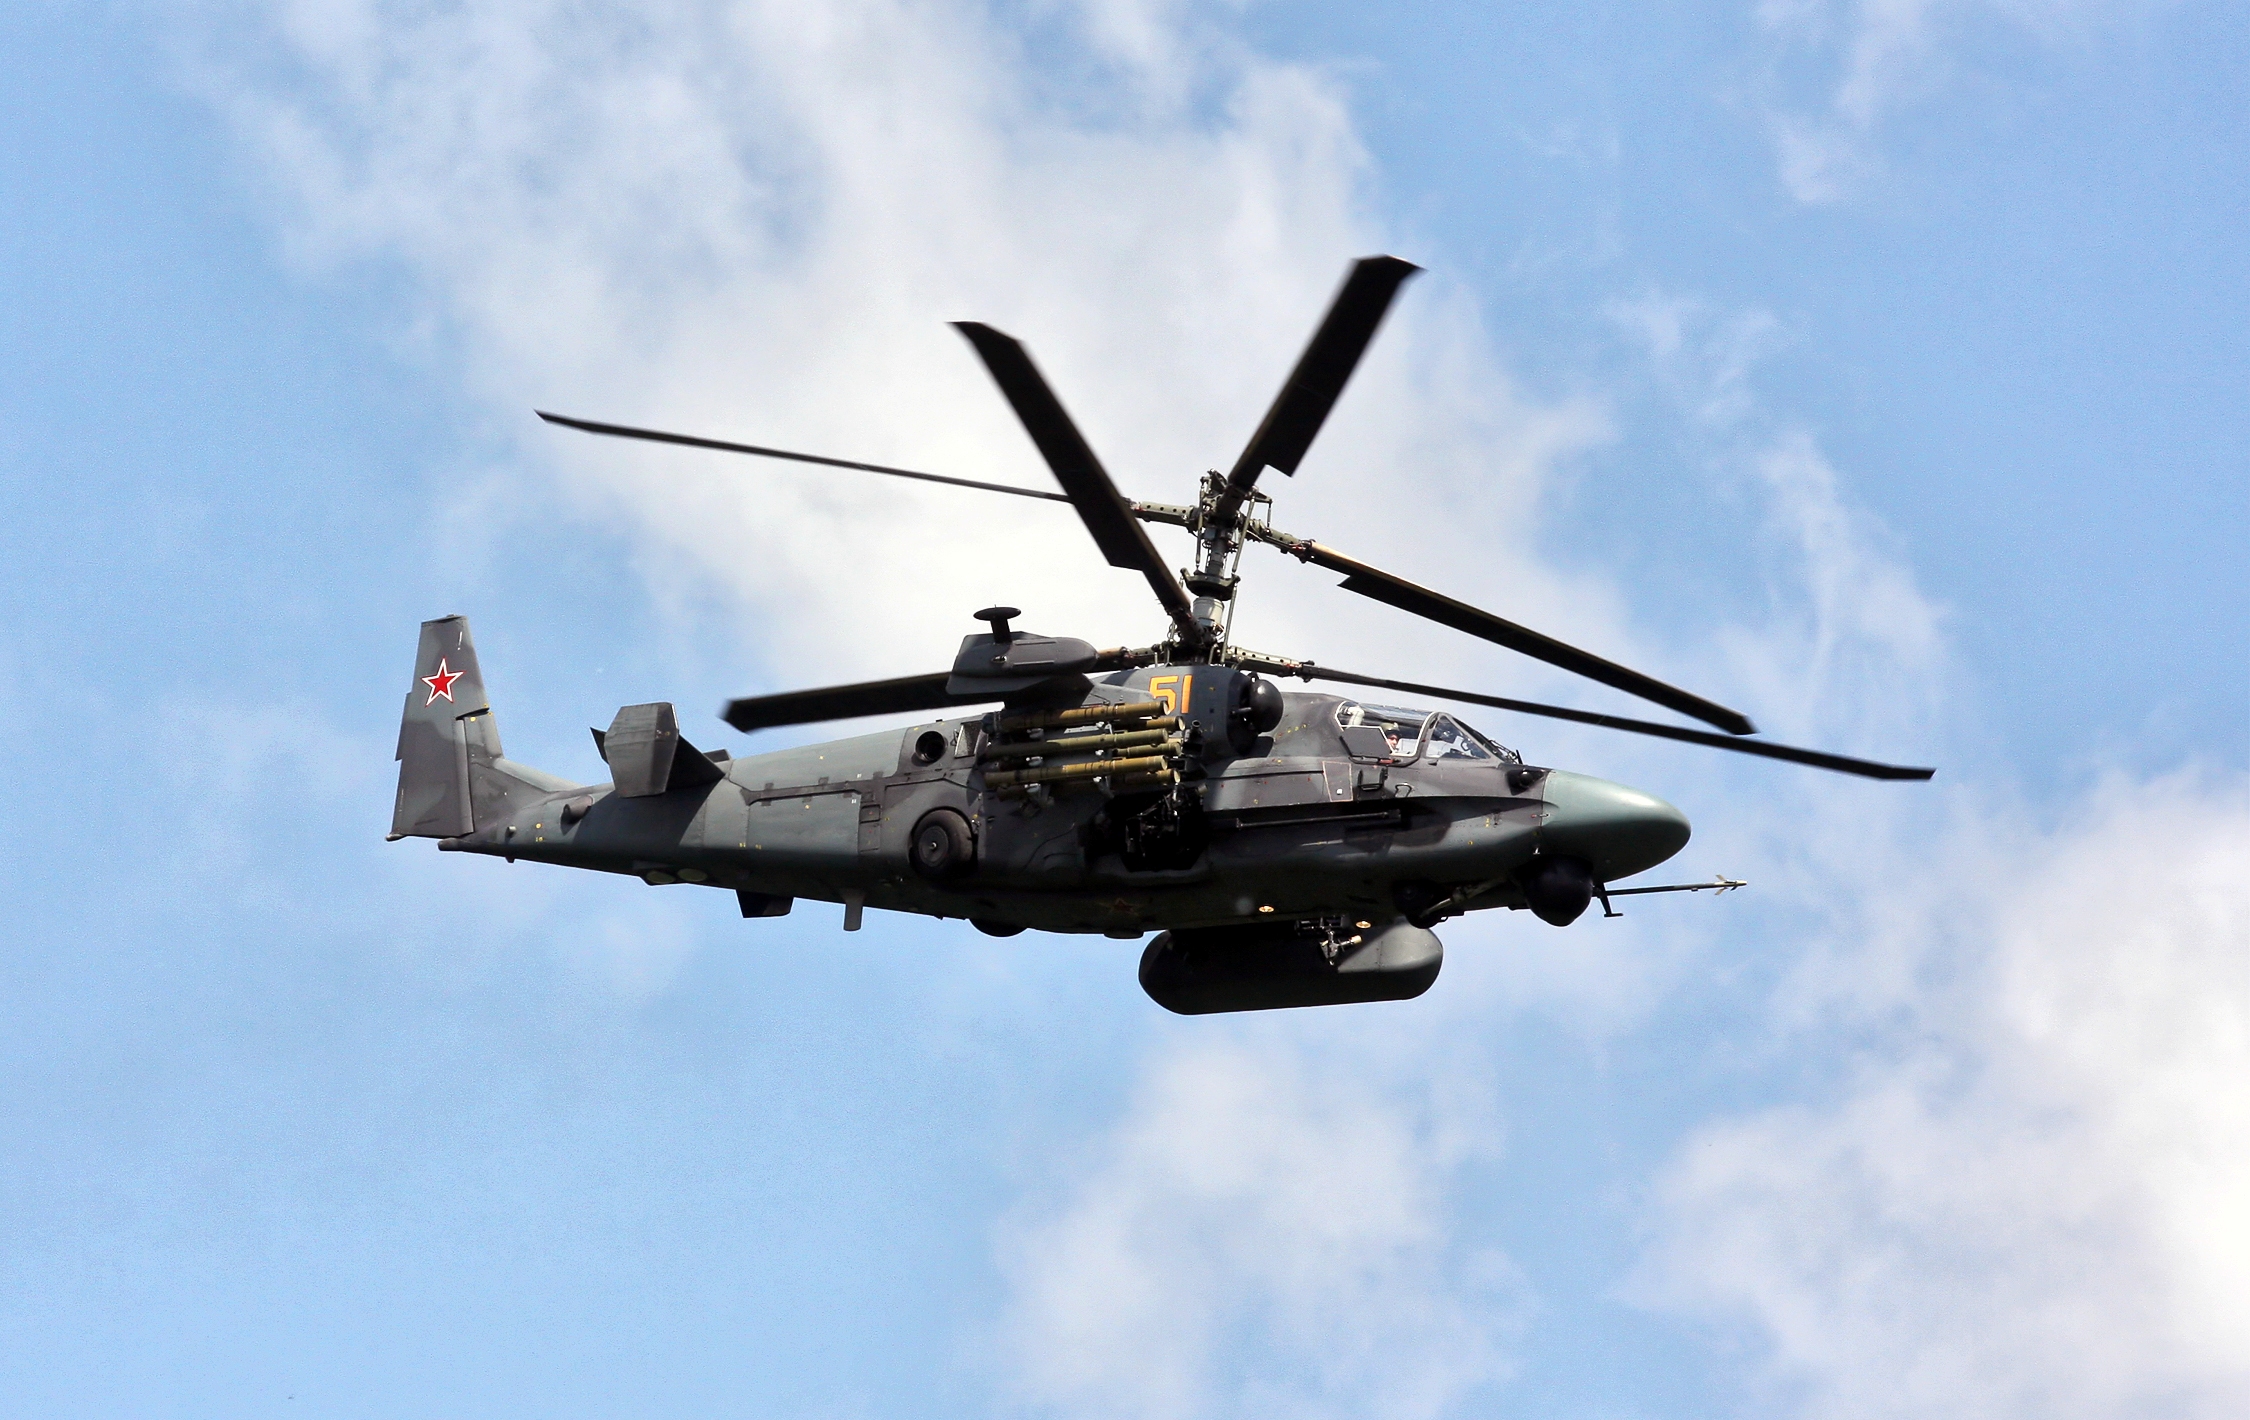 AFU viste hvordan de skjøt ned et russisk Ka-52 Alligator angrepshelikopter ved hjelp av det bærbare luftvernsystemet RBS 70.